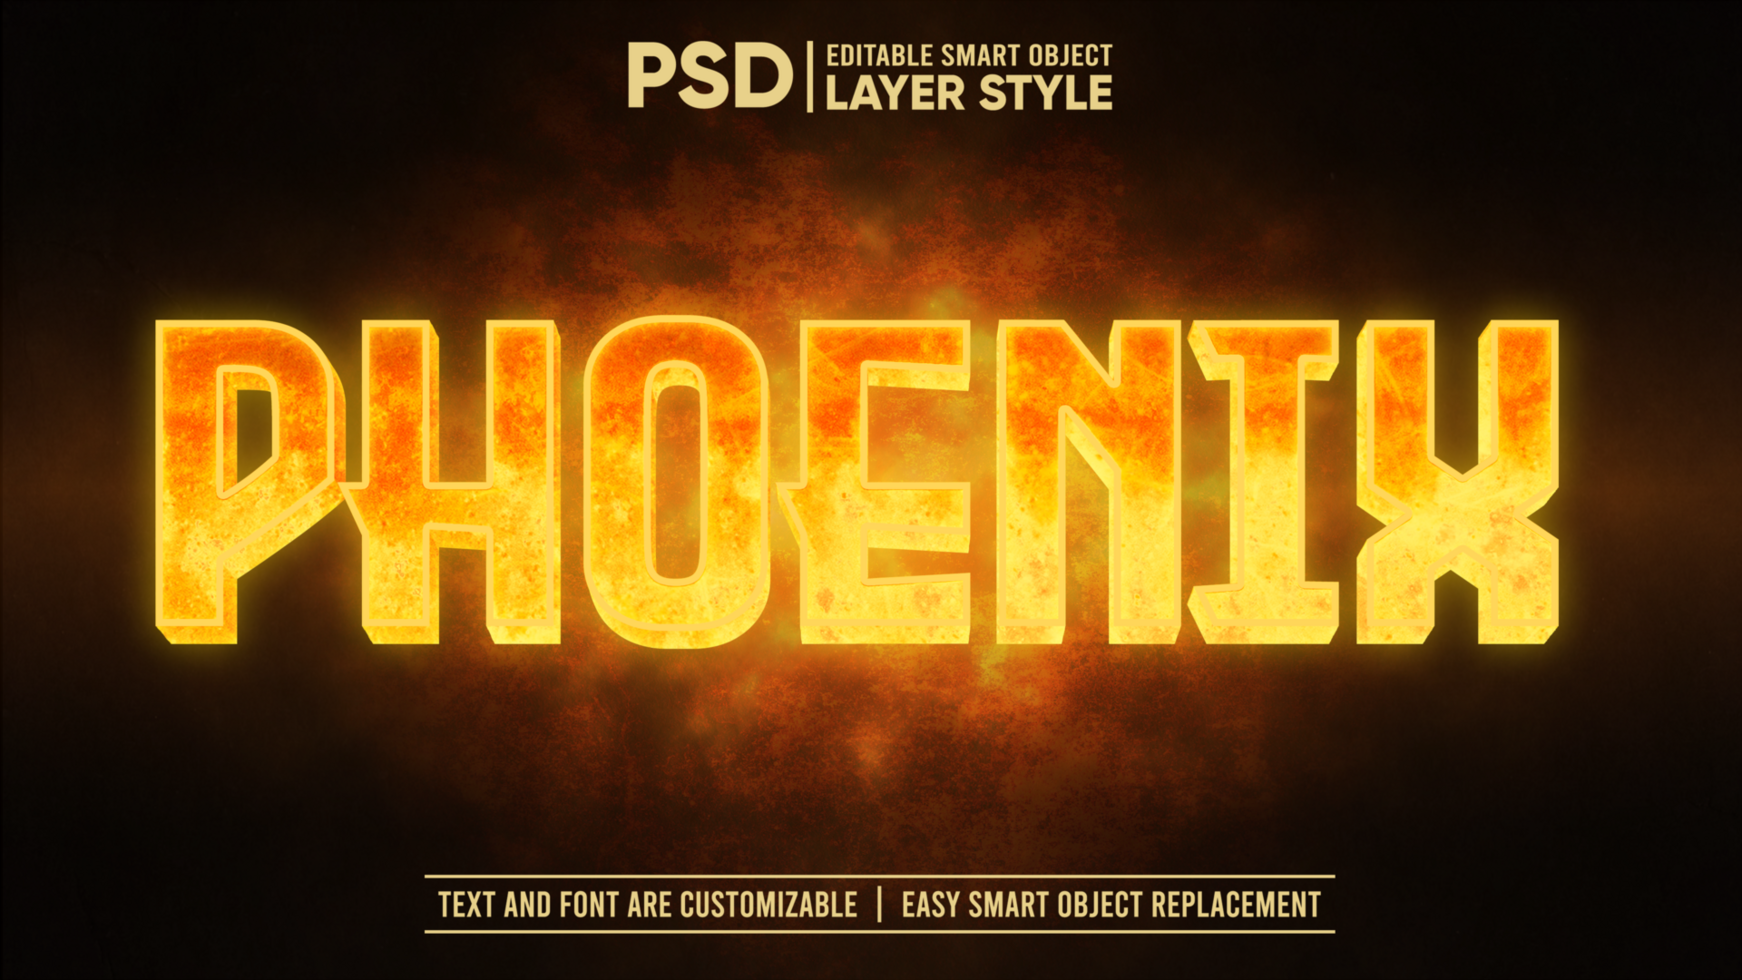 Fire Glowing Phoenix Text Effect Smart Object Mockup psd